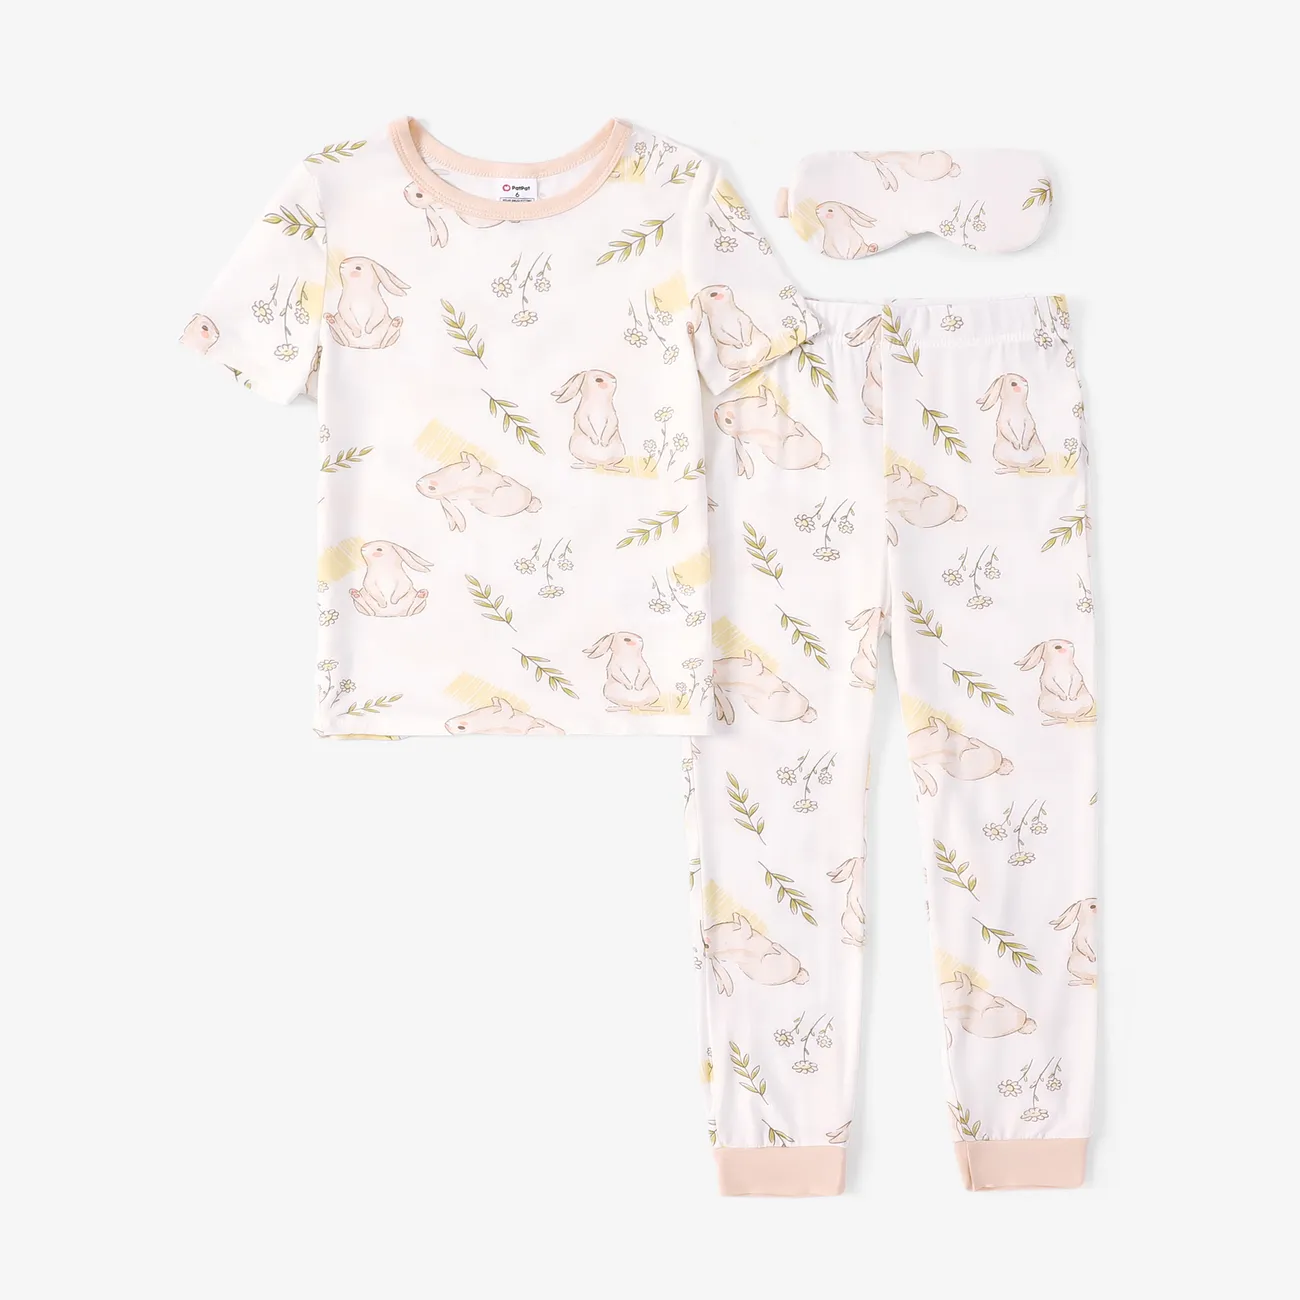 Kind Junge / Mädchen Kindlicher Hasendruck Bambus Stoff Enge Pyjamas Set nicht-gerade weiss big image 1